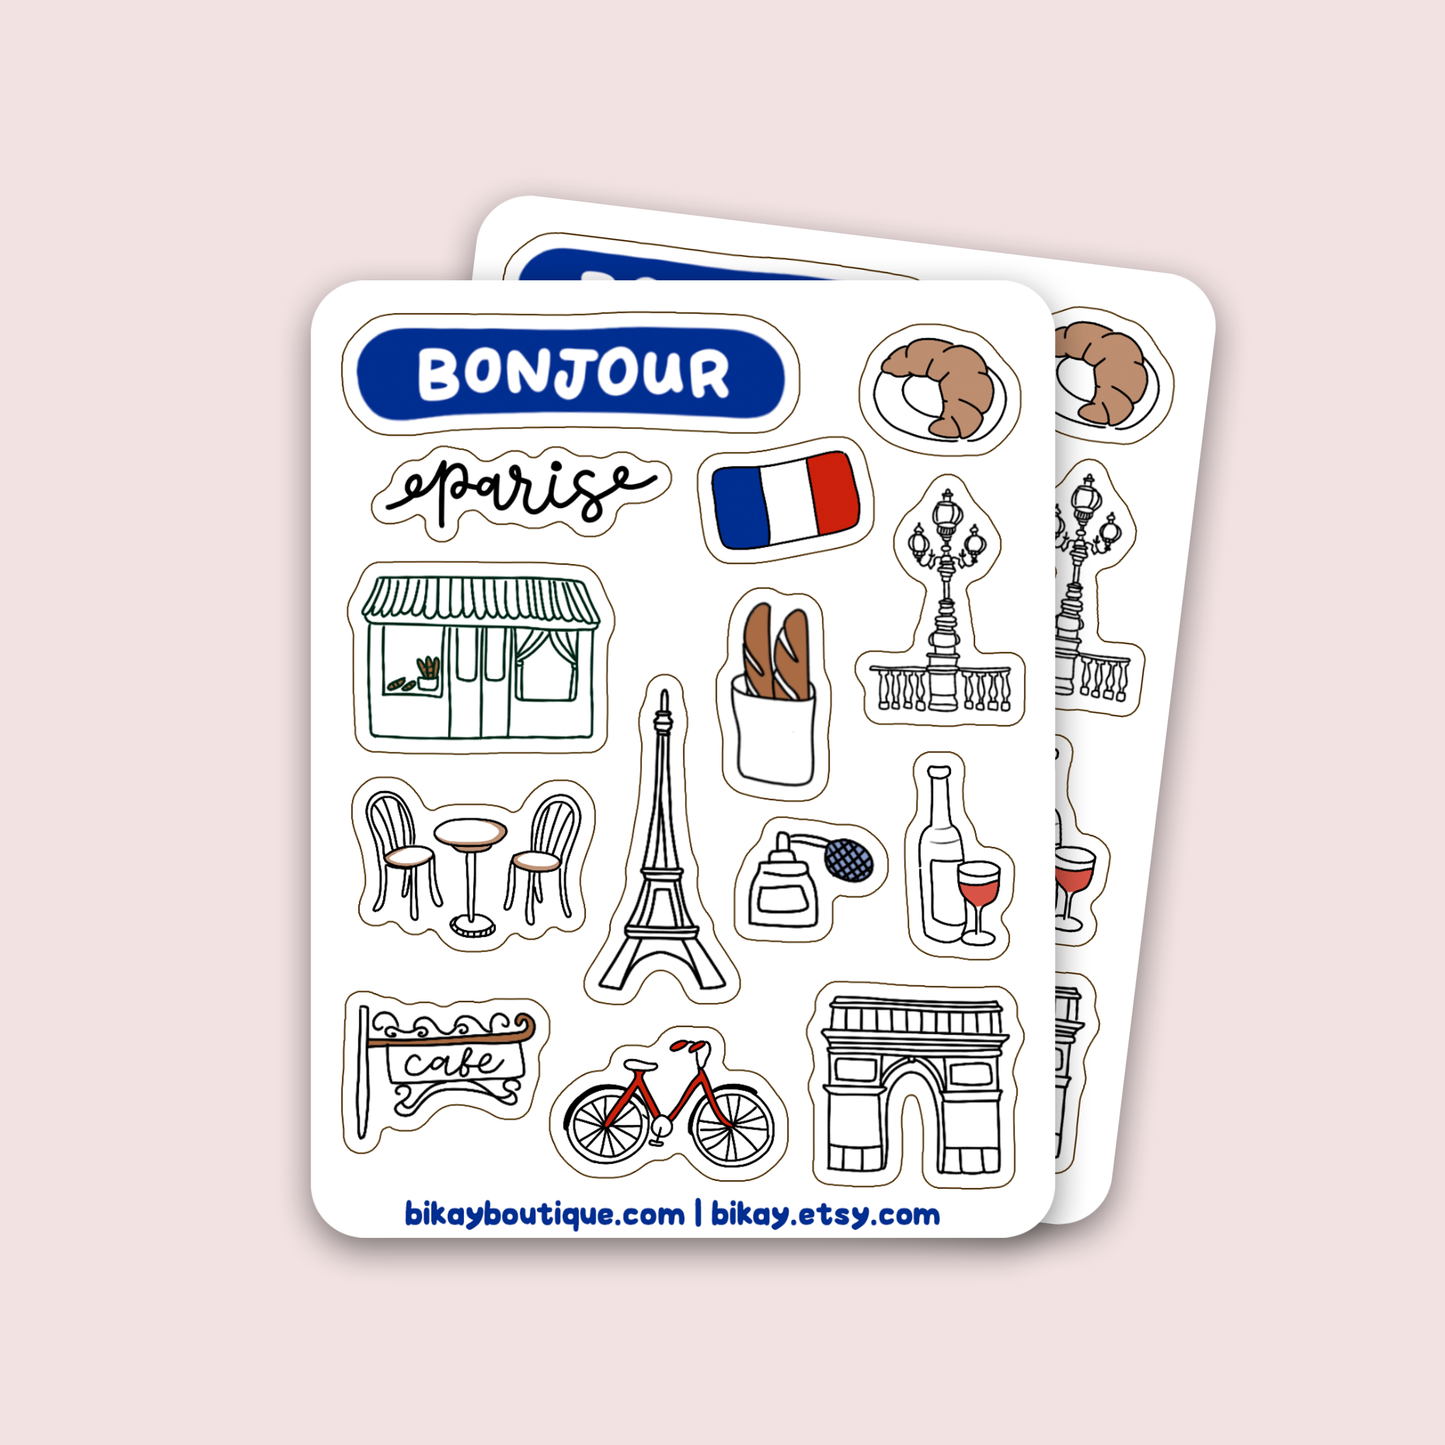 Paris Sticker Sheet